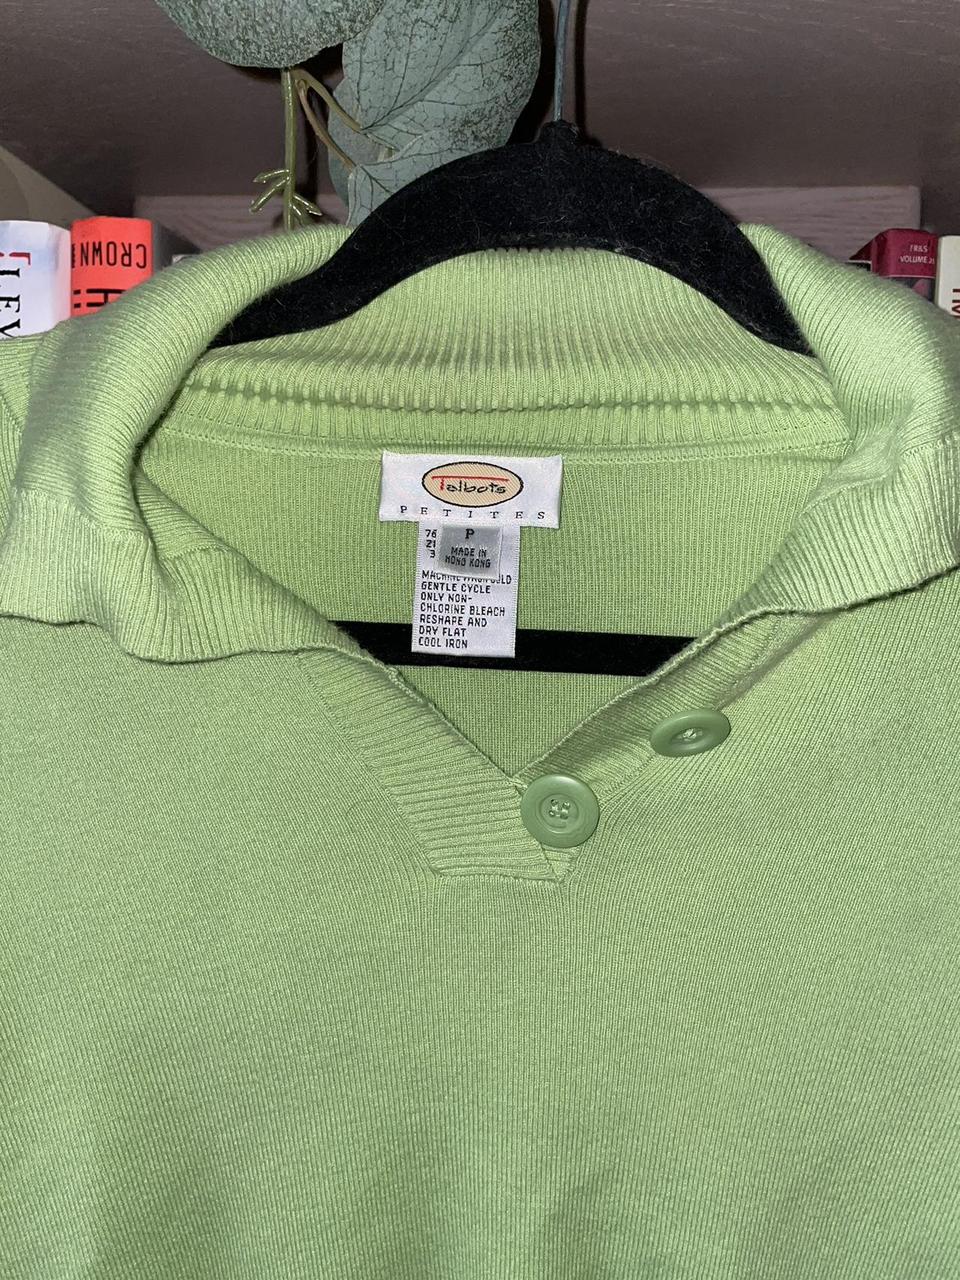 Talbots Women's Green Shirt (3)